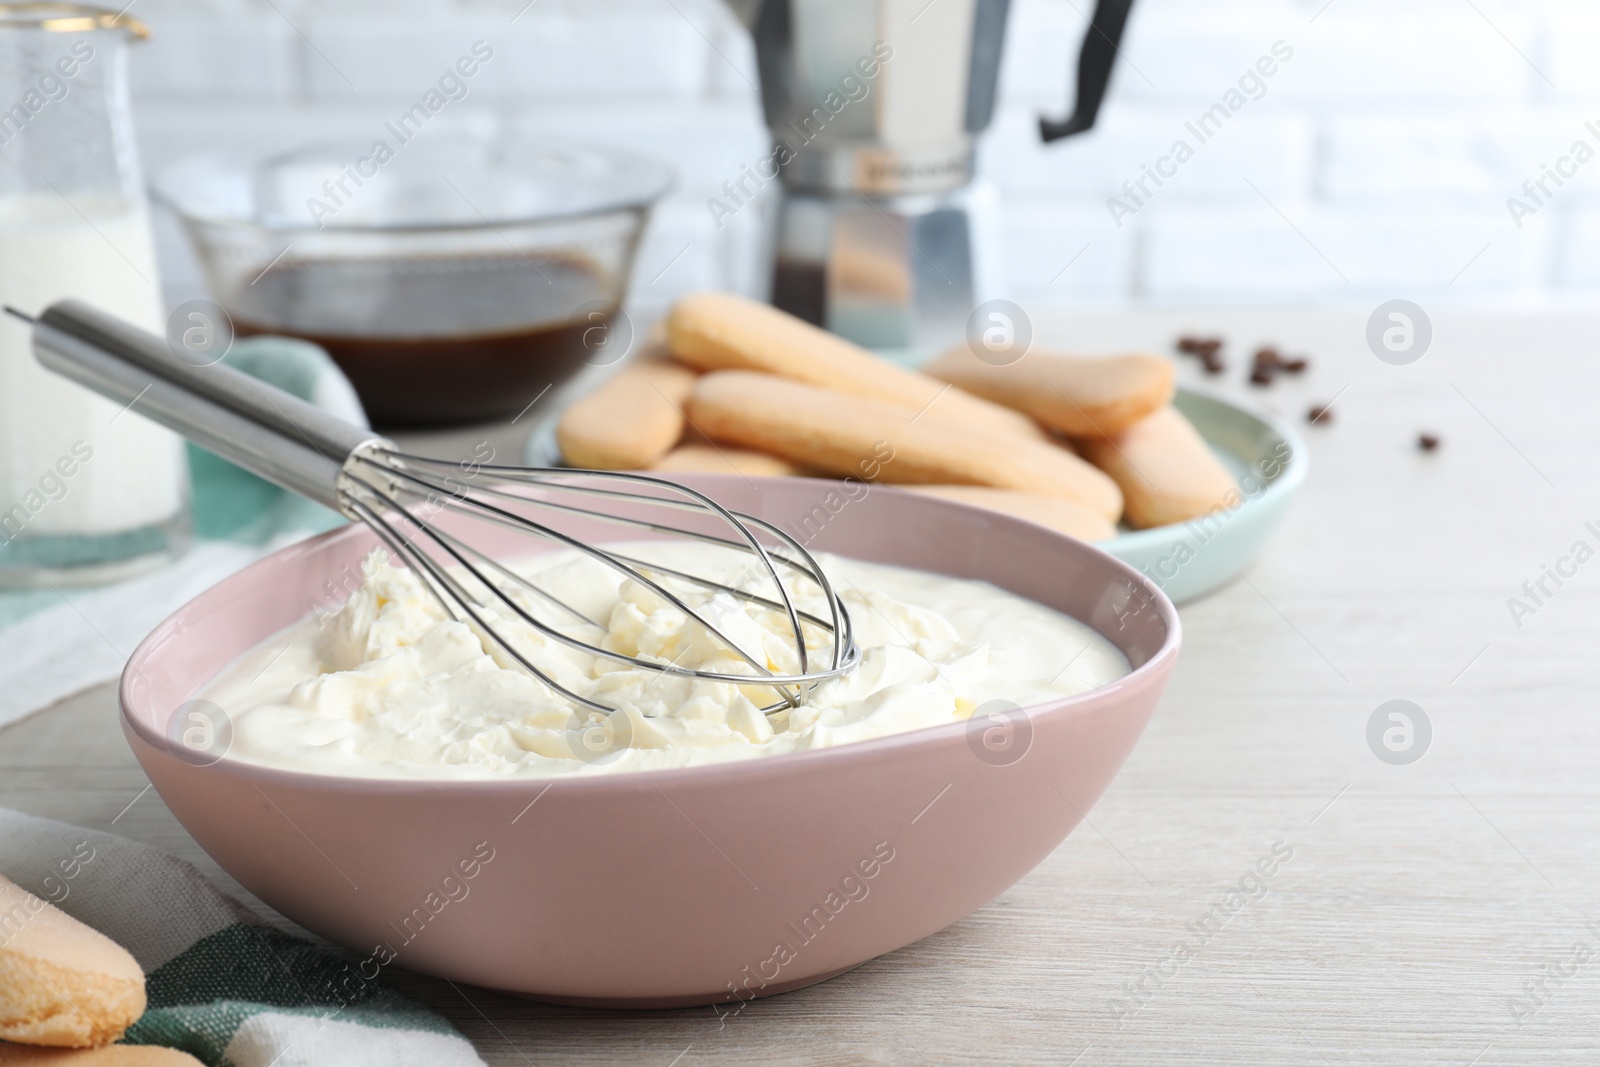 Photo of Bowl with mascarpone cream on white wooden table. Making tiramisu cake